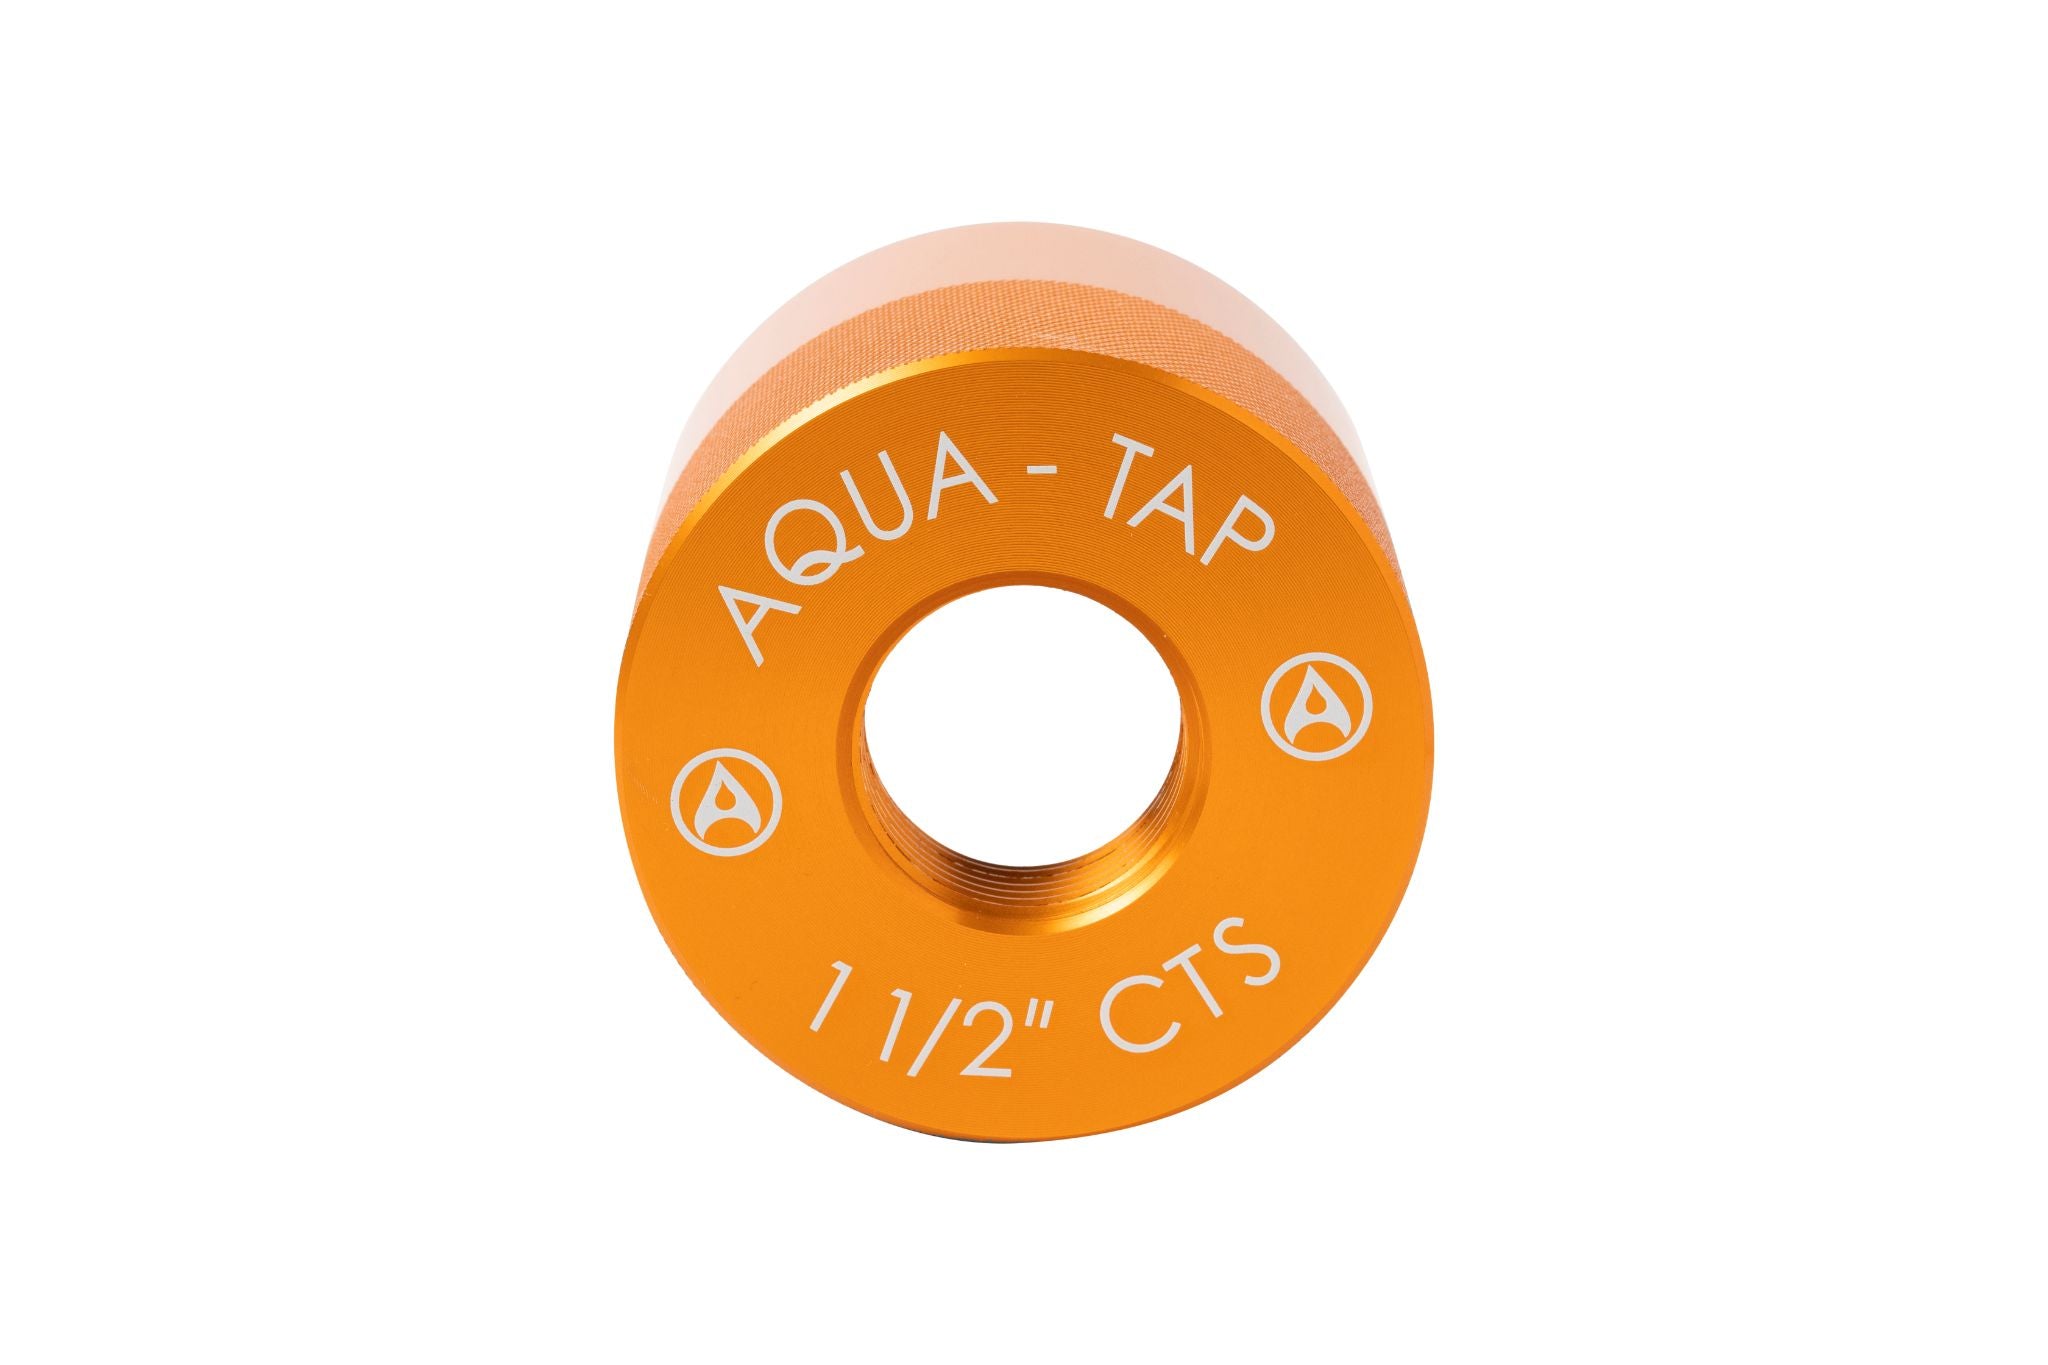 1-1/2" CTS Adapter - Aquatap